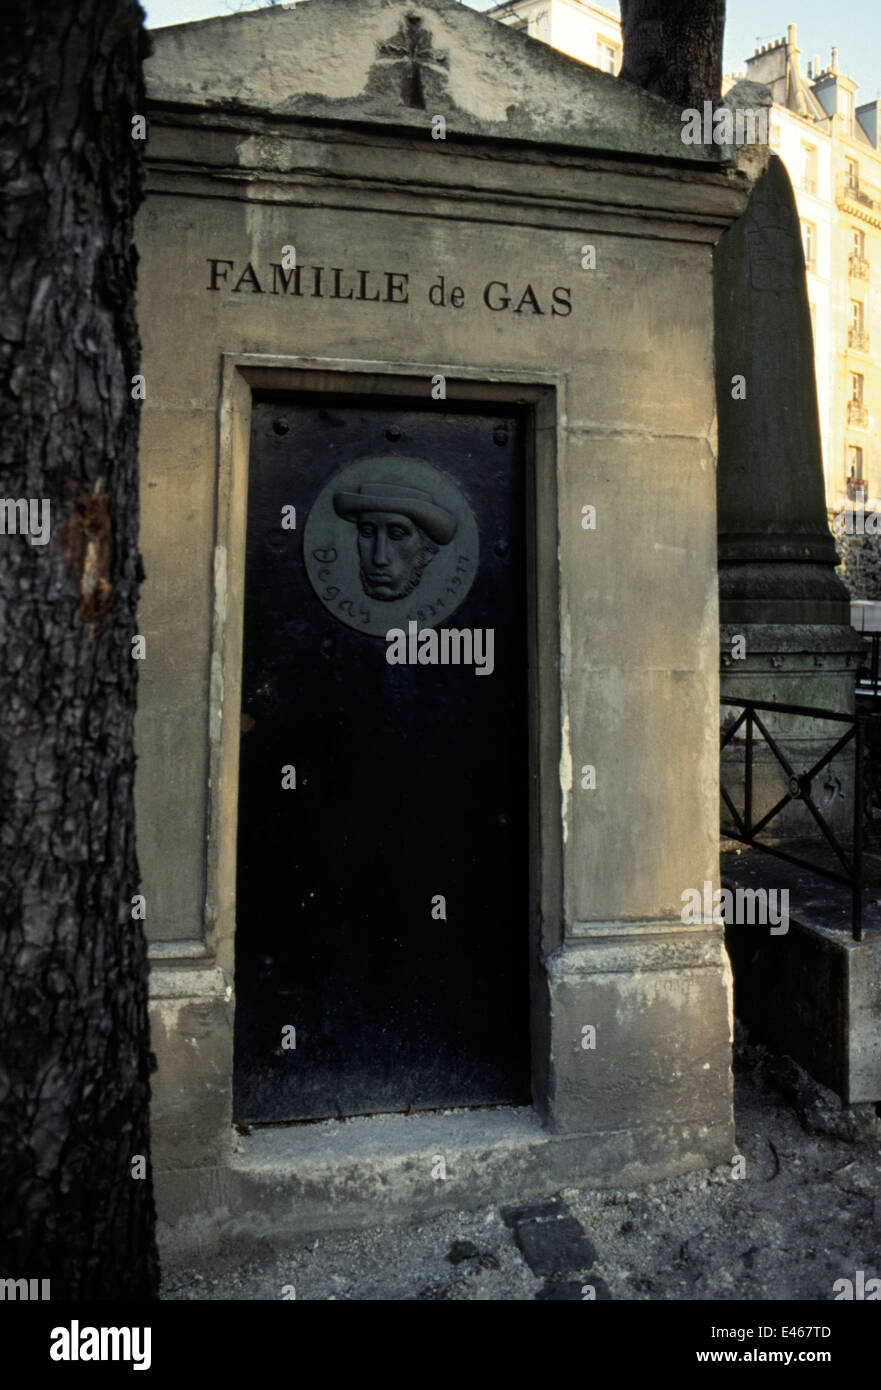 AJAXNETPHOTO. PARIS, Frankreich. - Grab von DE GAS FAMILIE - Künstler Edgar Degas, geboren 1834 starb 1917 im Friedhof von Montmartre begraben. Foto: Jonathan Eastland/AJAX Stockfoto